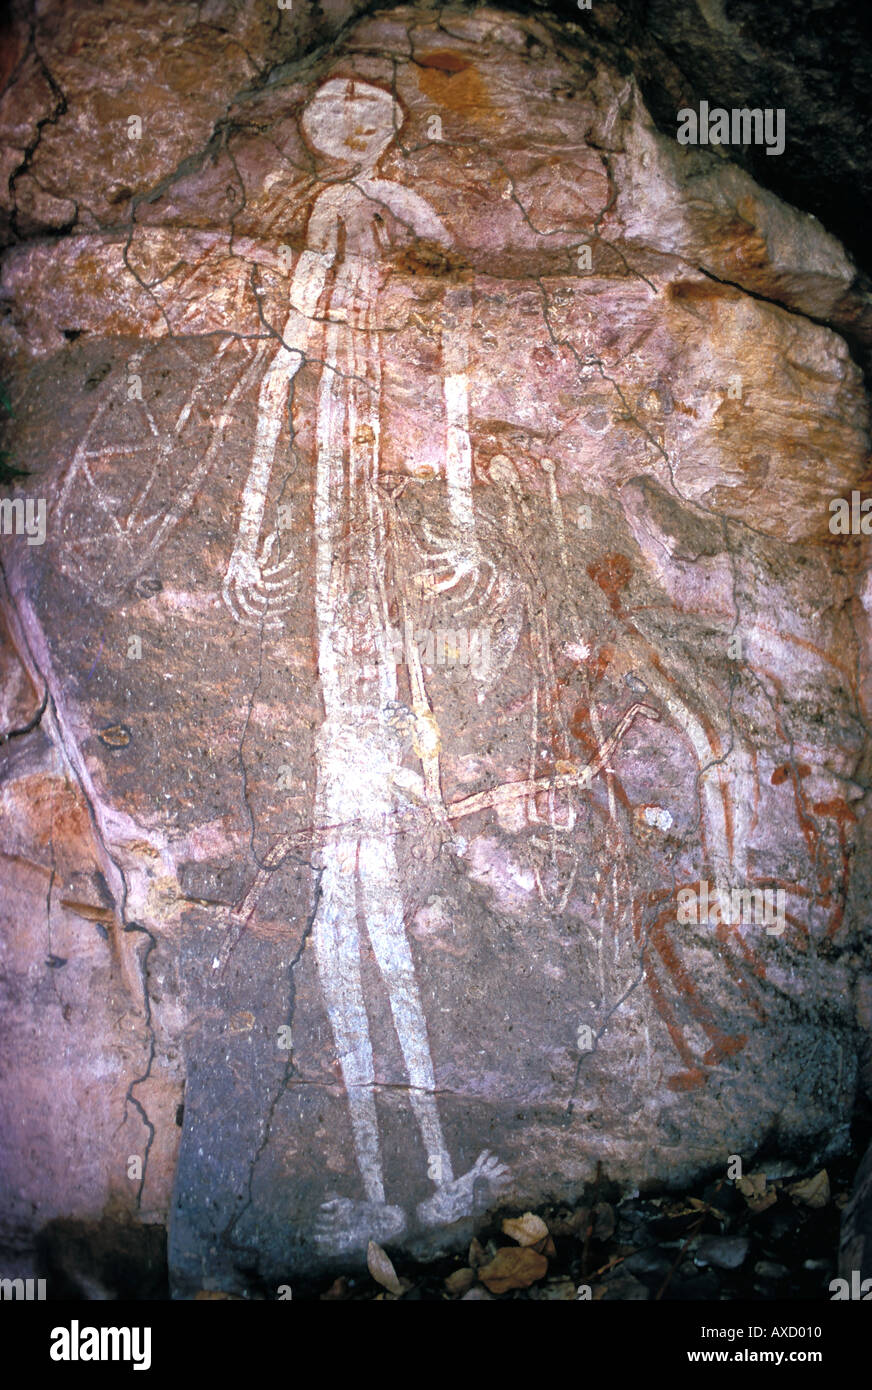 Aborigine-Felskunst ca. 1800 Darstellung 6 finger Whiteman stehlen Arnhemland NT Australien Stockfoto